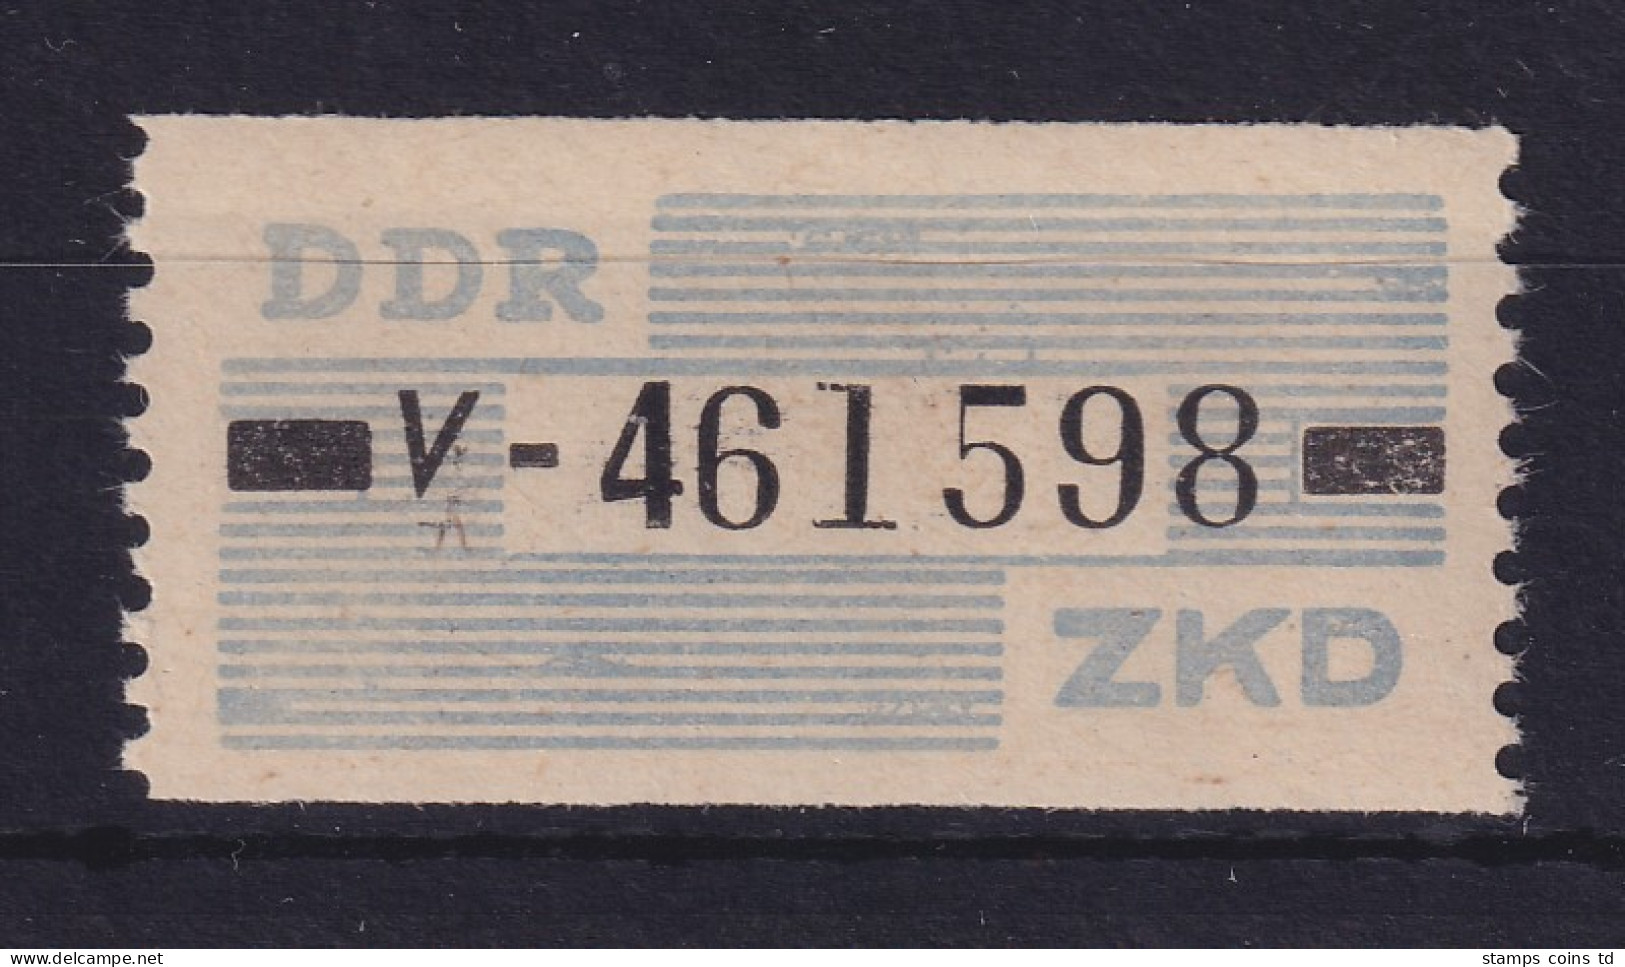 DDR Dienstmarken B Mi.-Nr. 26 V Halle/Saale # 461598 Postfrisch ** - Mint